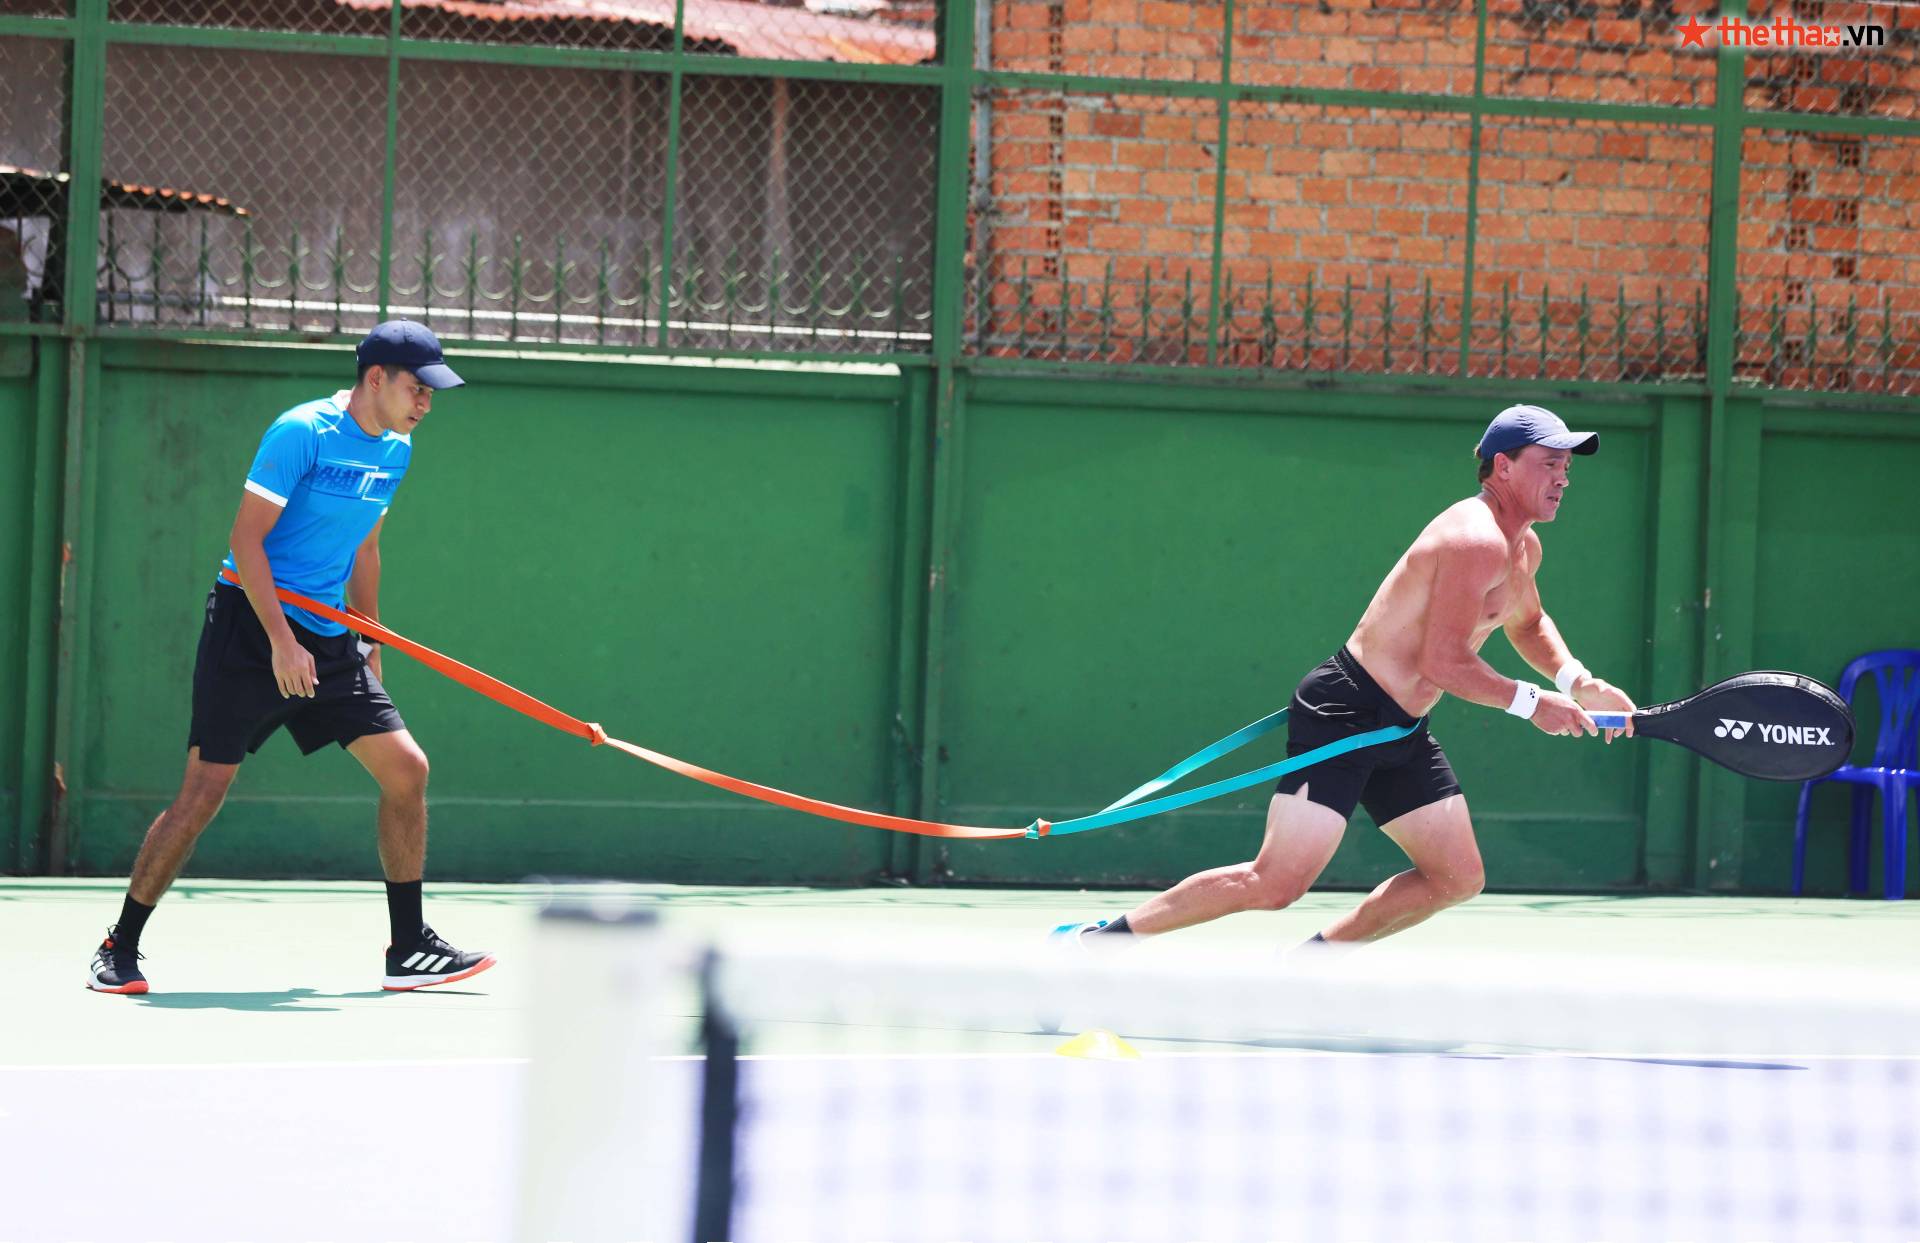 M25 Tây Ninh: Tay vợt New Zealand tập giữa trưa nắng, khoe cơ bắp cuồn cuộn ở tuổi 35 - Ảnh 3